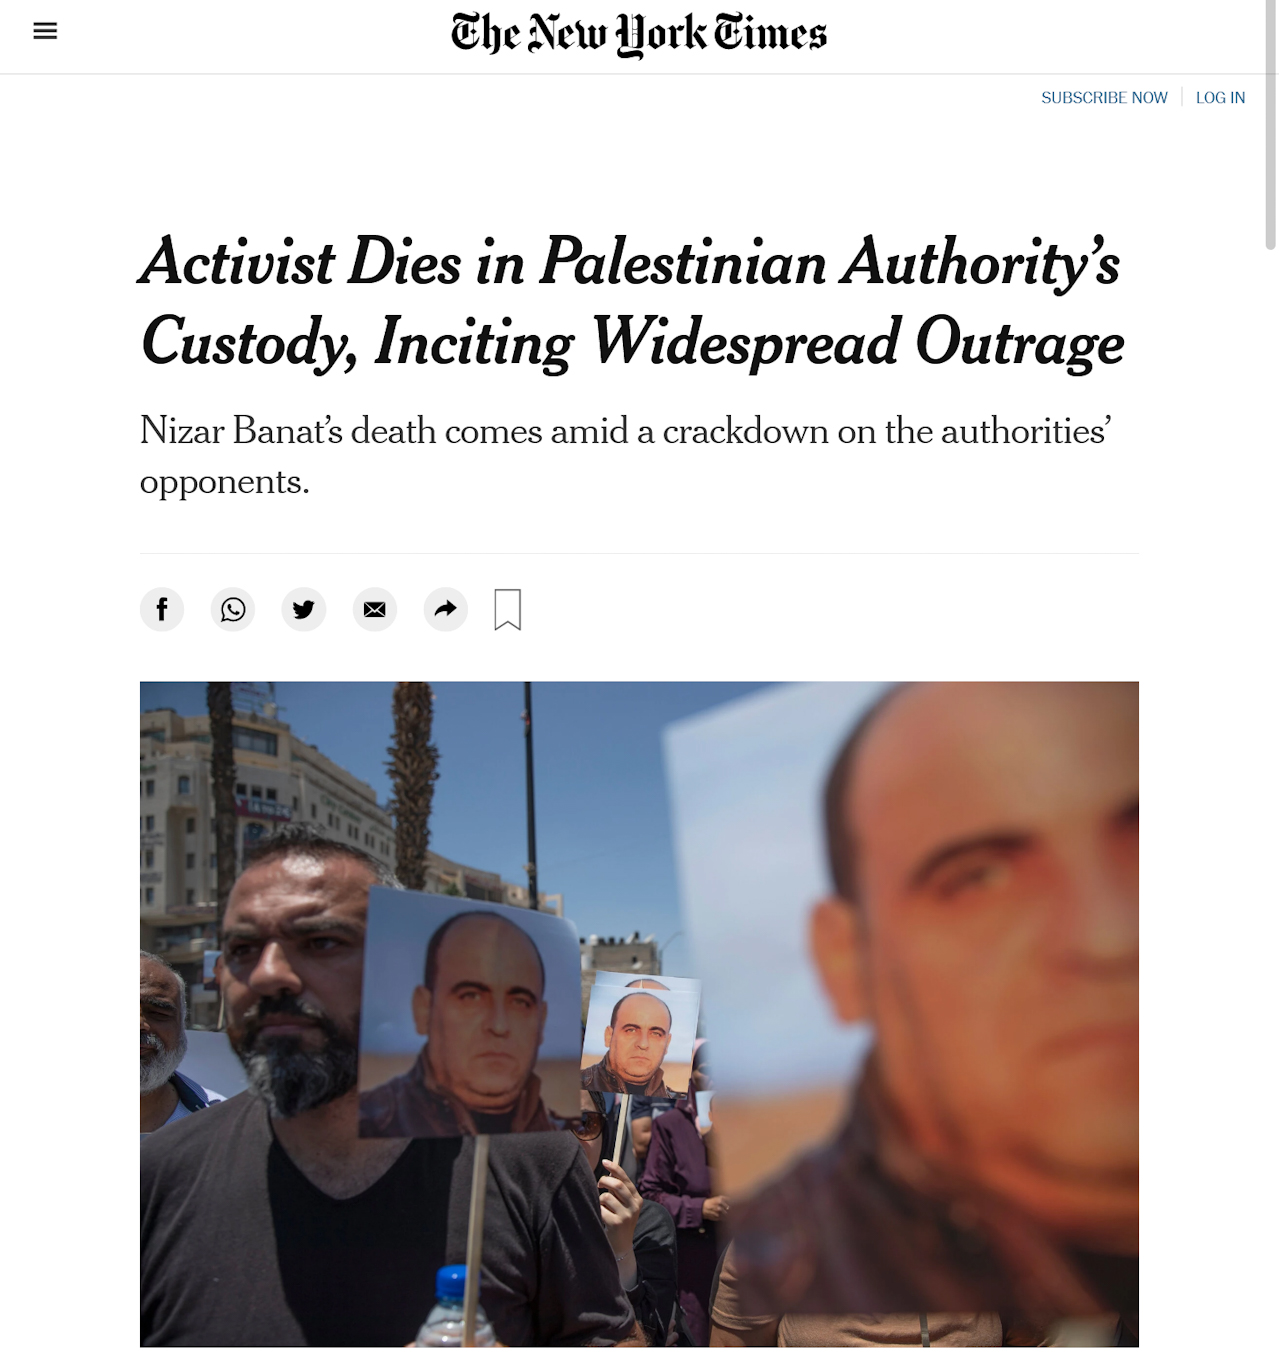 作为以色列的坚定捍卫者，纽约时报迅速谴责巴勒斯坦权力机构的不当行为